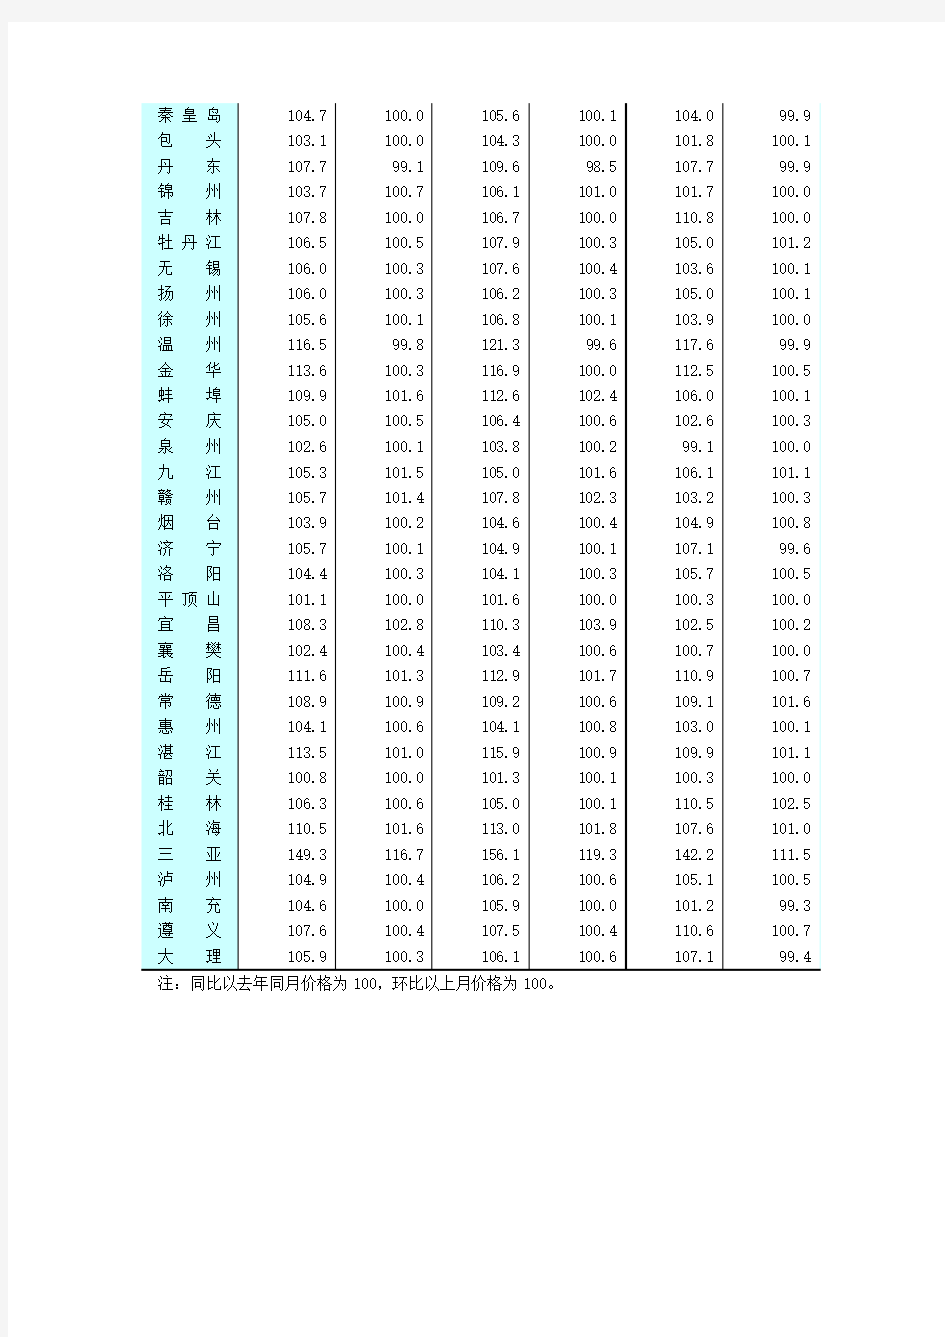 《全国七十个大中城市房屋销售价格指数》(2010年2月)